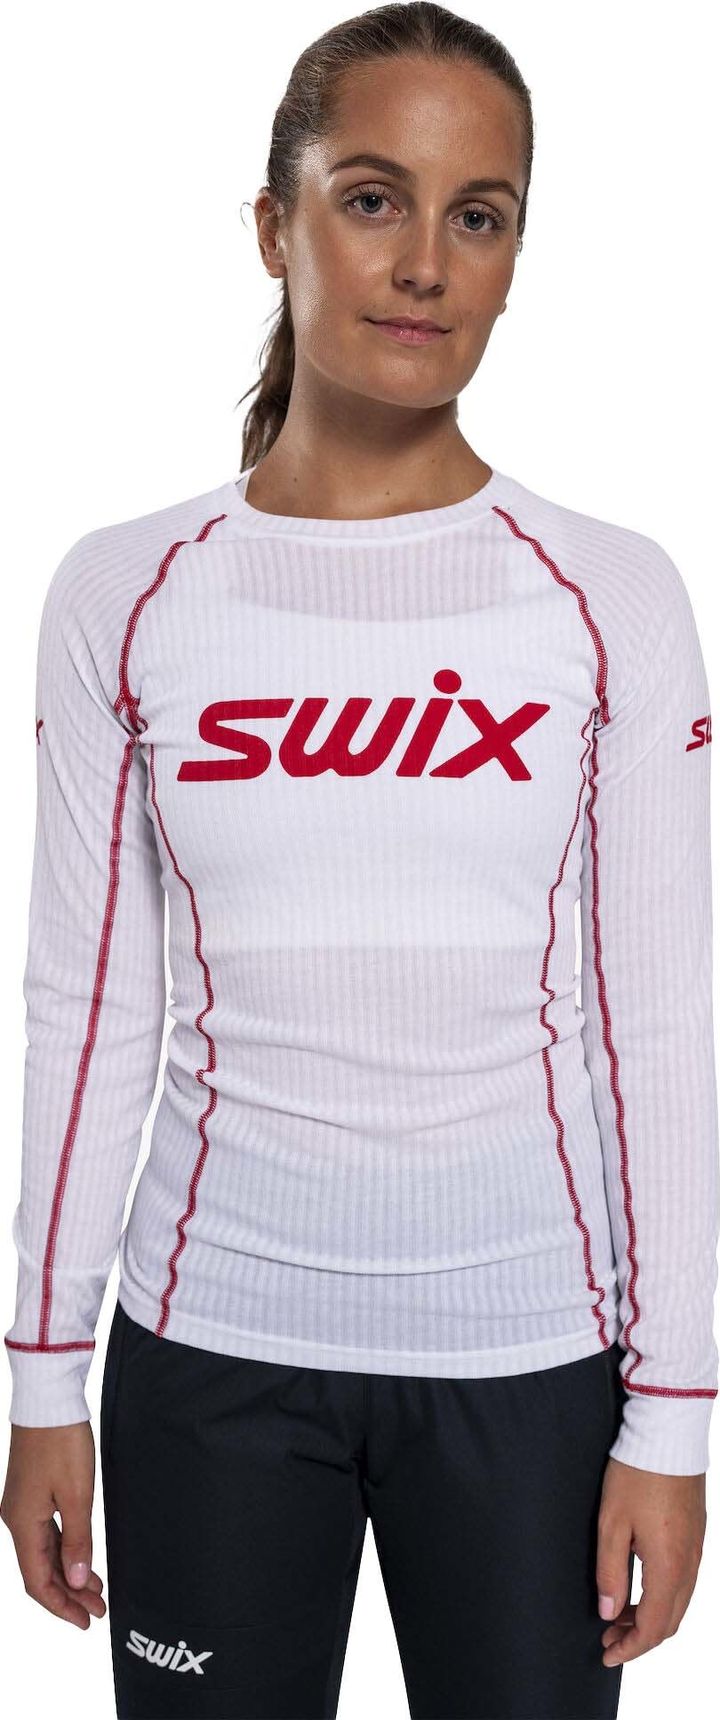 Women's RaceX Classic Long Sleeve Bright White/Swix Red Swix